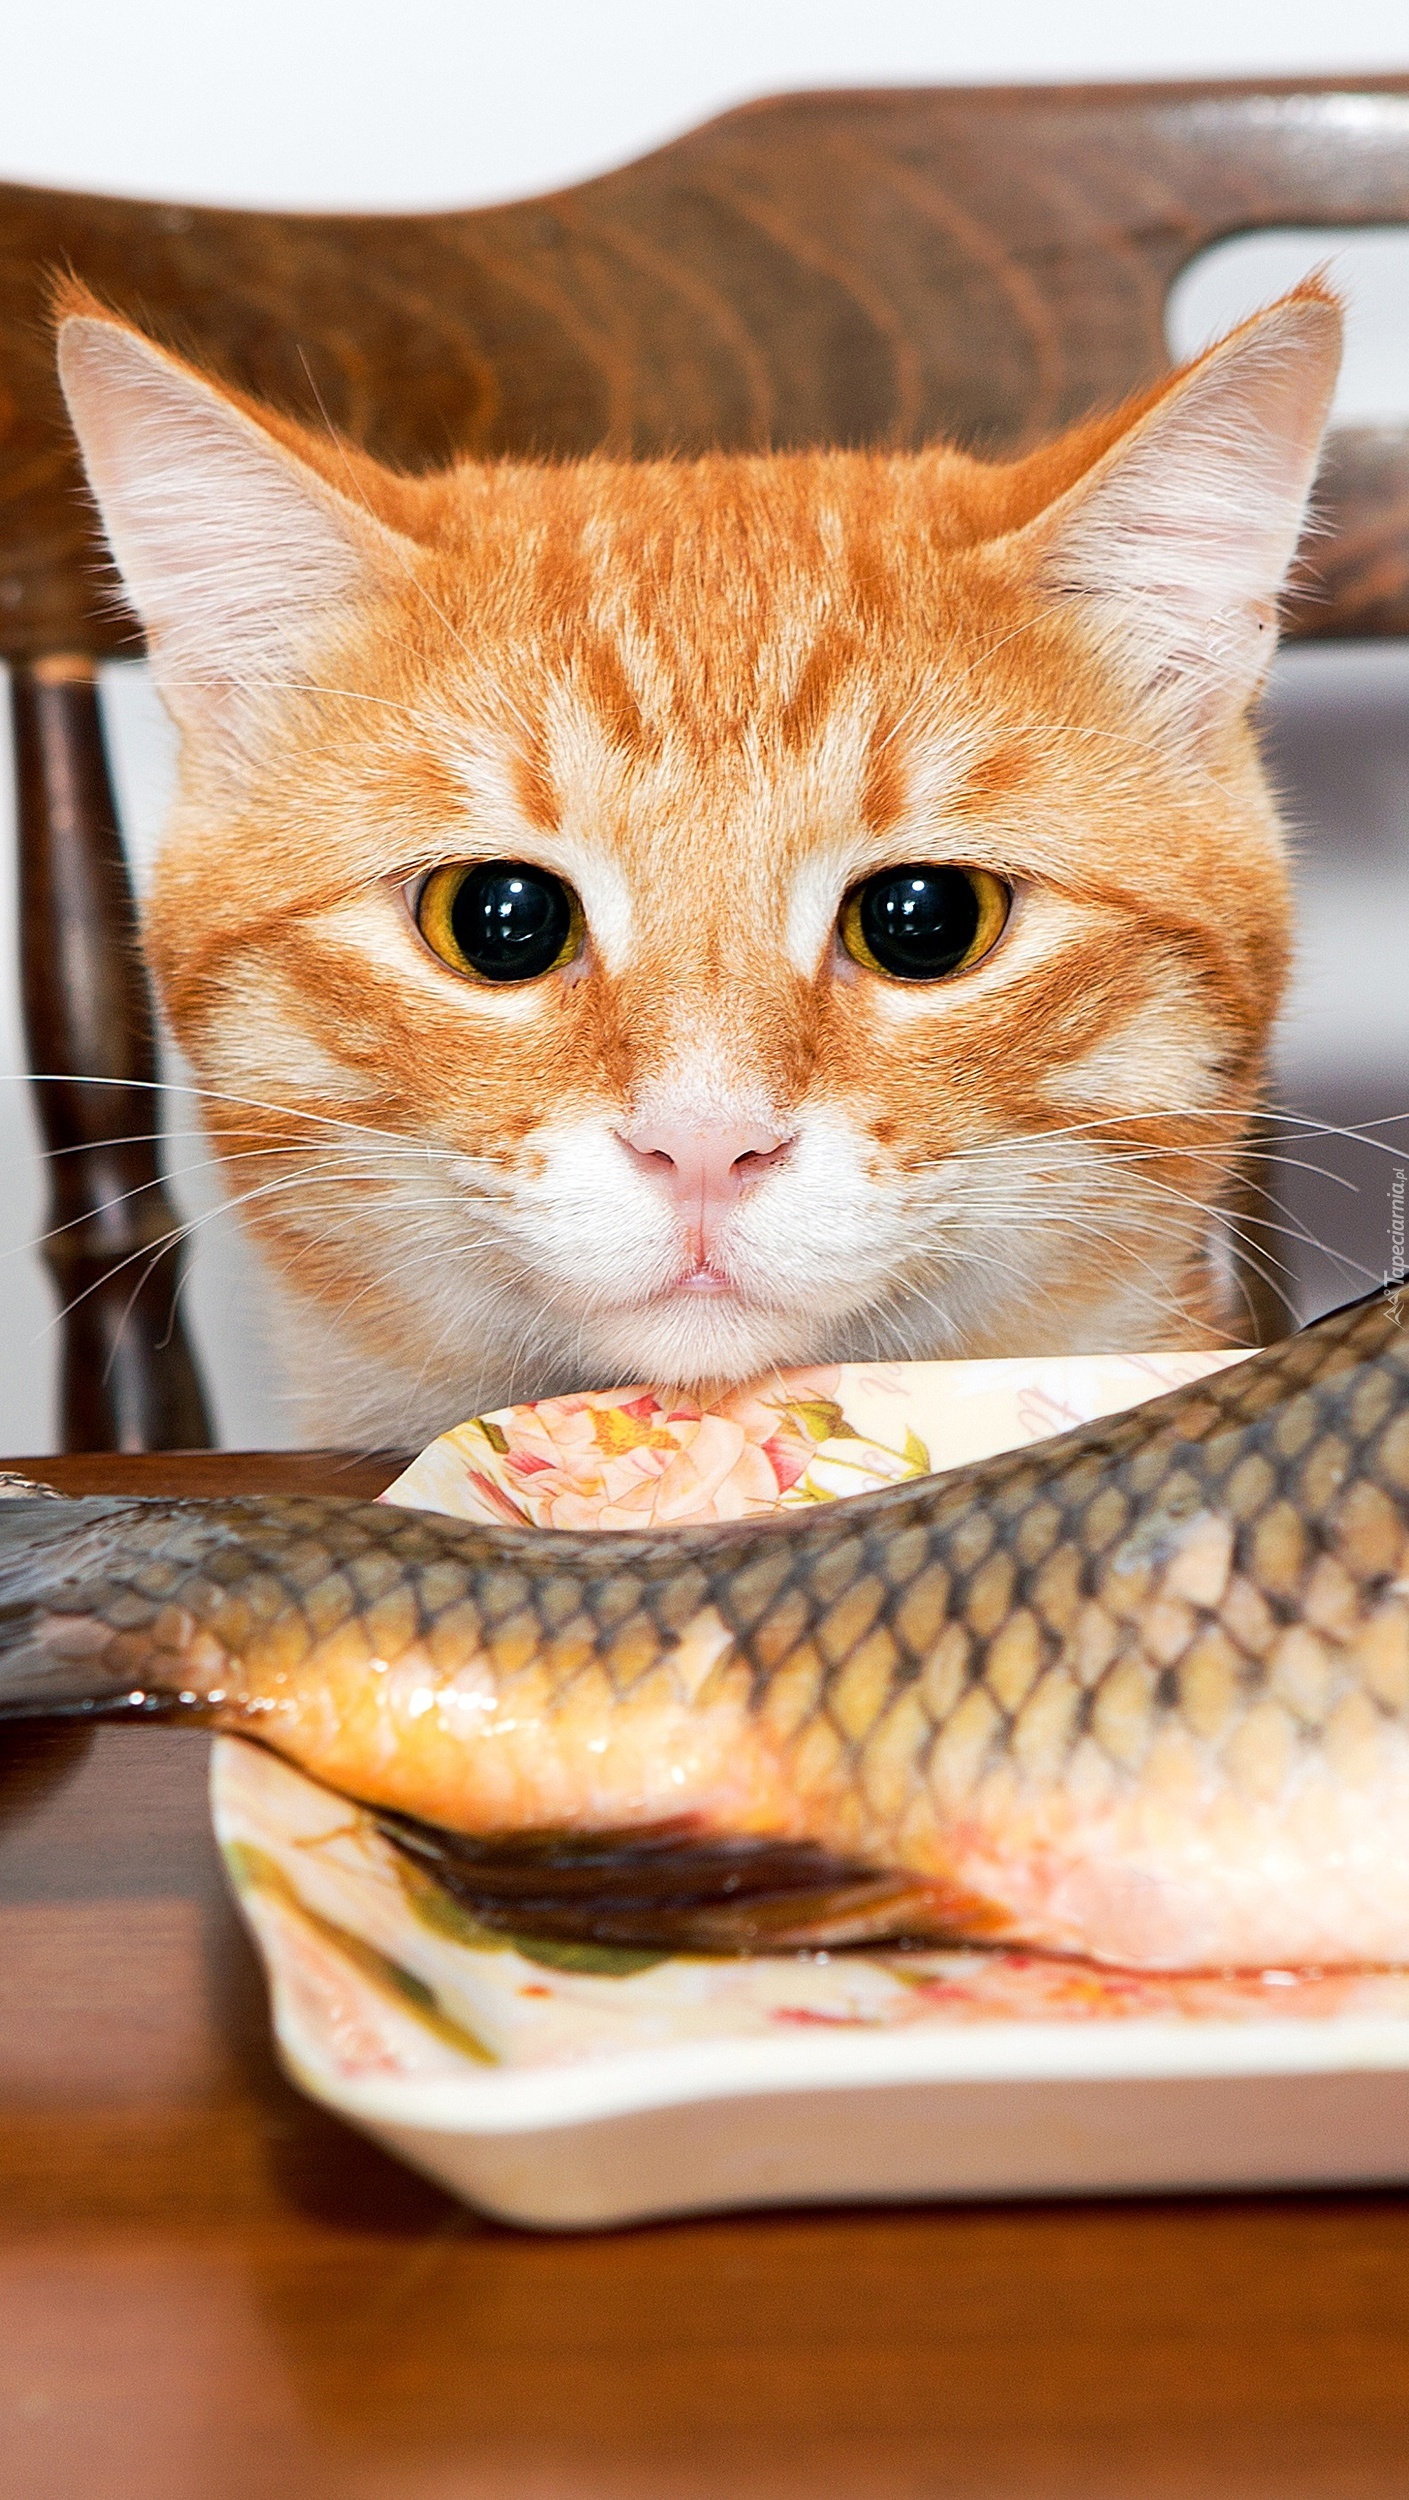 Kot patrzący na rybę